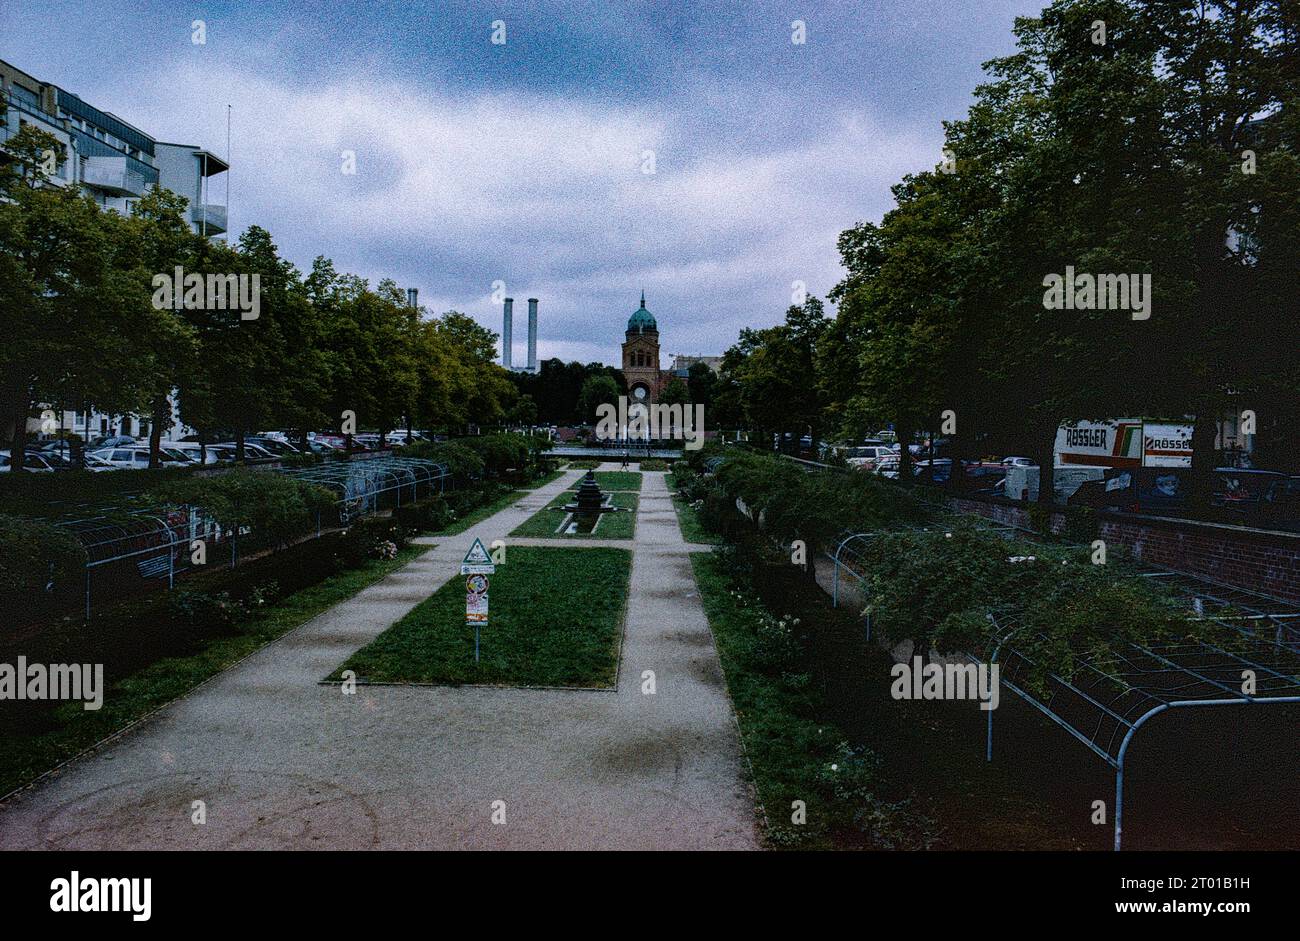 Die ehemalige Tote Zone der Berliner Mauer, die durch ein Kreuzberger Viertel verläuft, wurde heute in einen Stadtpark umgewandelt, in dem man frei spazieren und spazieren gehen kann. Berlin, Deutschland. Bild auf analogem, altem Kodak Film. Stockfoto